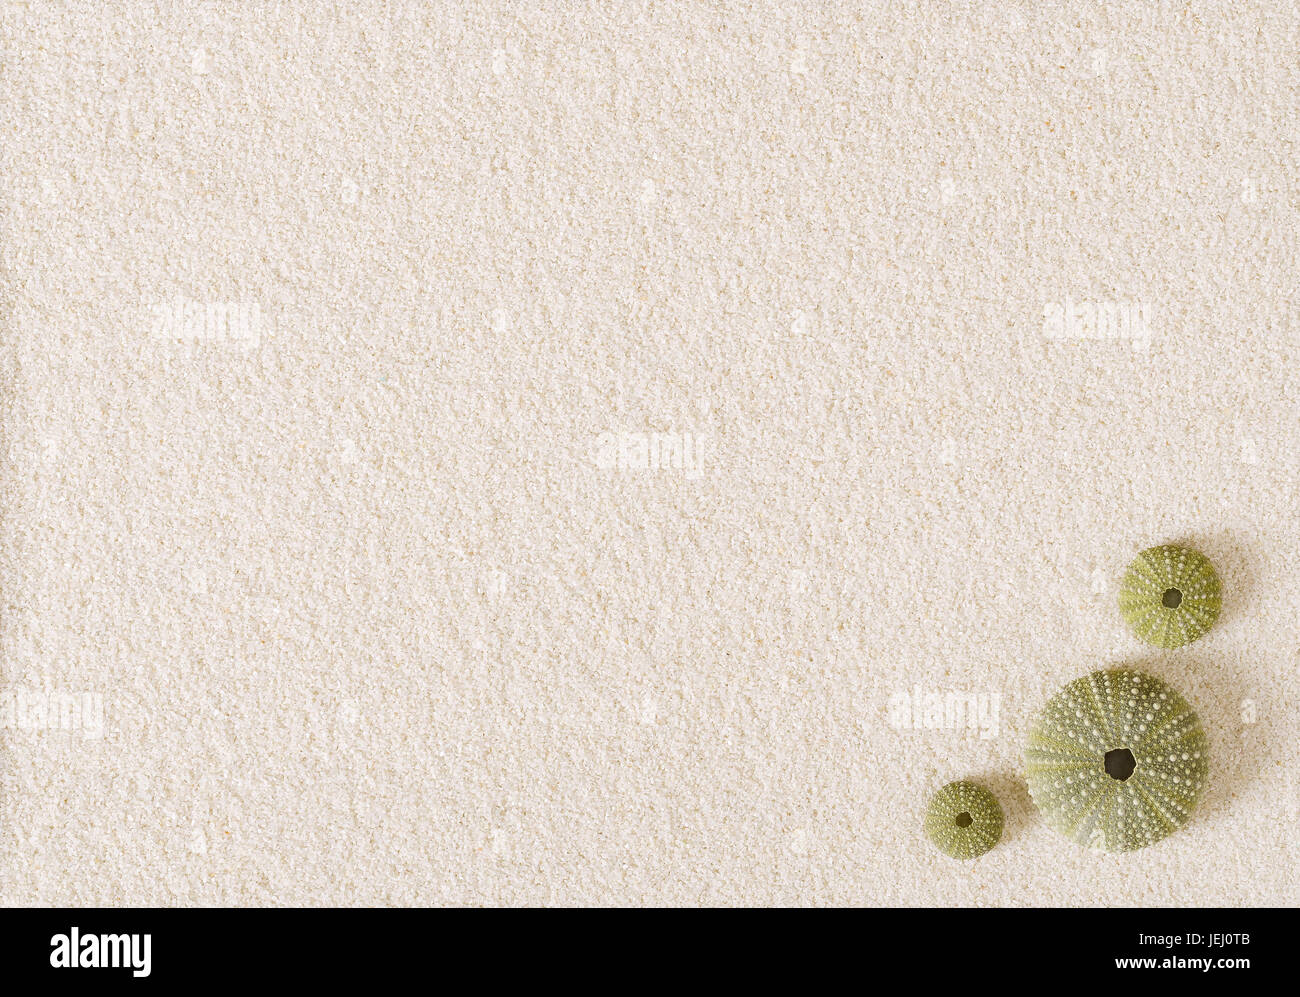 Drei grüne Seeigel Muscheln auf flache weiße Sandoberfläche. See-Igel mit kugelförmigen Endoskeletons. Psammechinus Miliaris vom Mittelmeer entfernt. Stockfoto